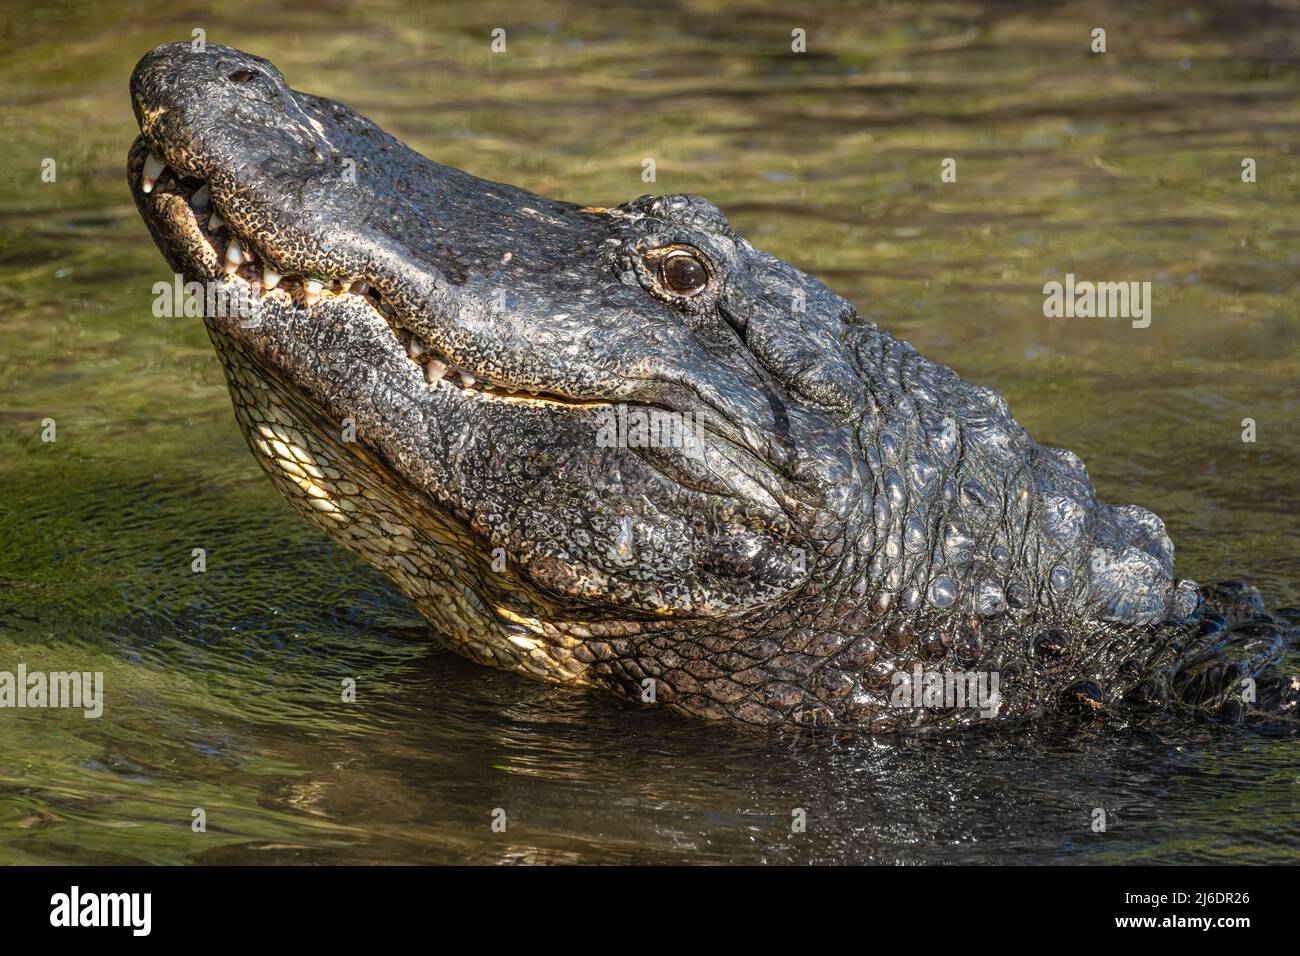 Alligator américain (Alligator mississippiensis) levant la tête tout en grotestant au parc zoologique de la ferme des alligators de St. Augustine, en Floride. Banque D'Images